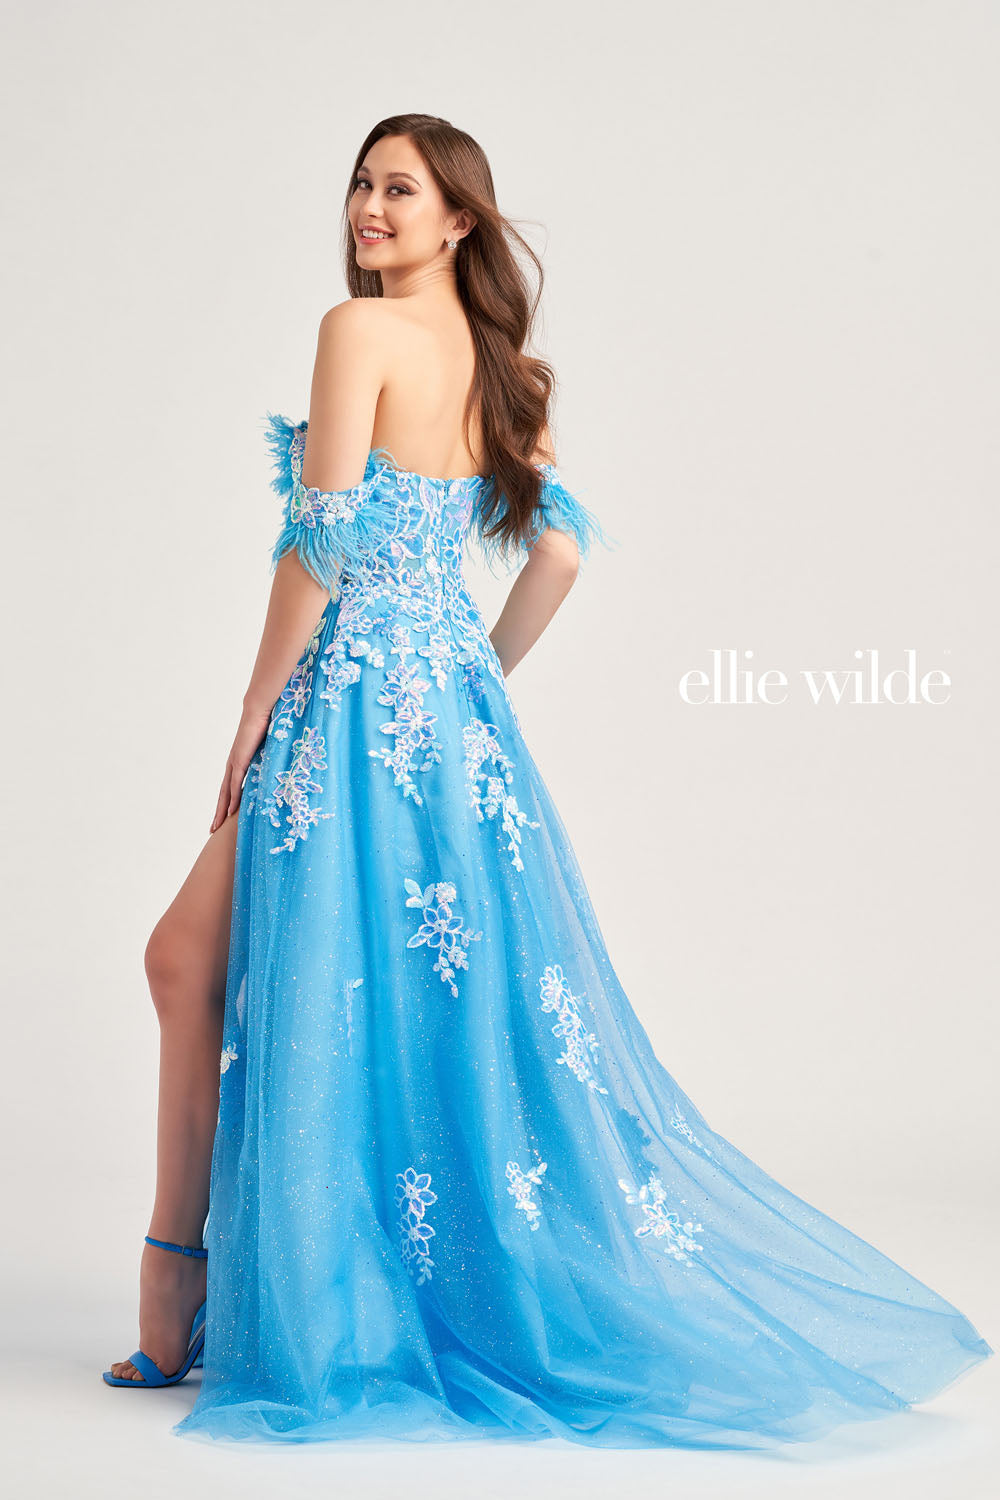 ellie wilde dresses